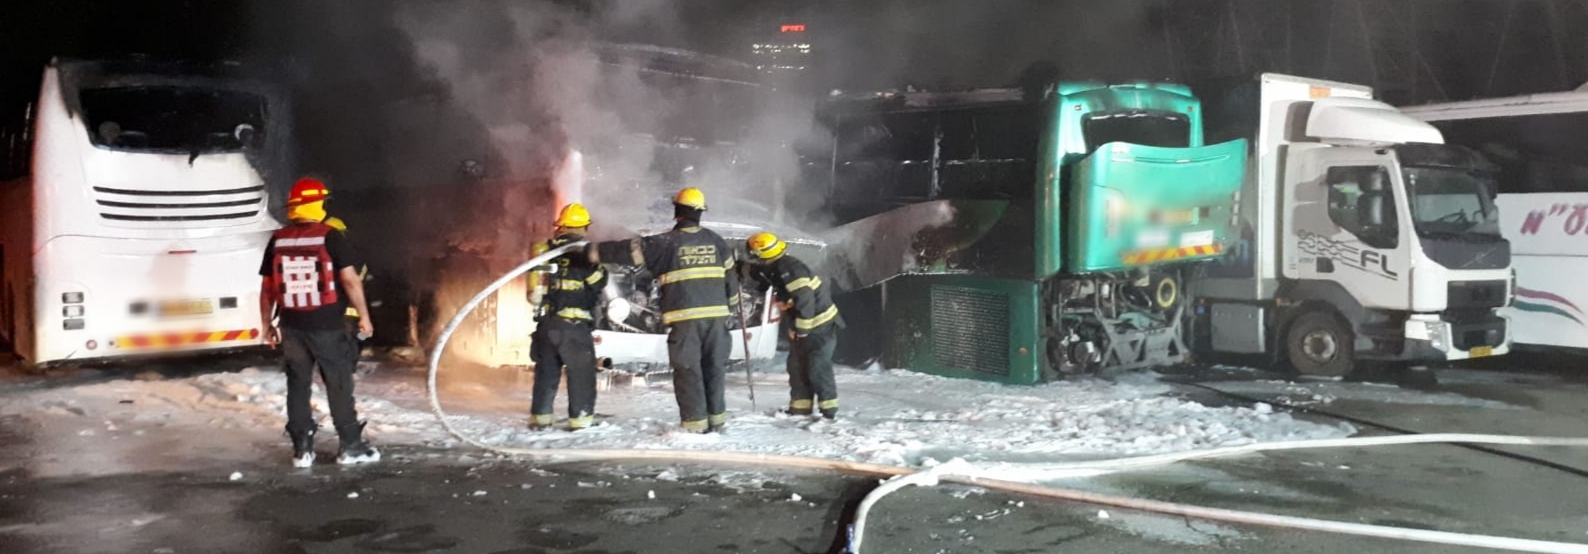 שלושת האוטובוסים שעלו באש הלילה. צילום: דוברות המשטרה